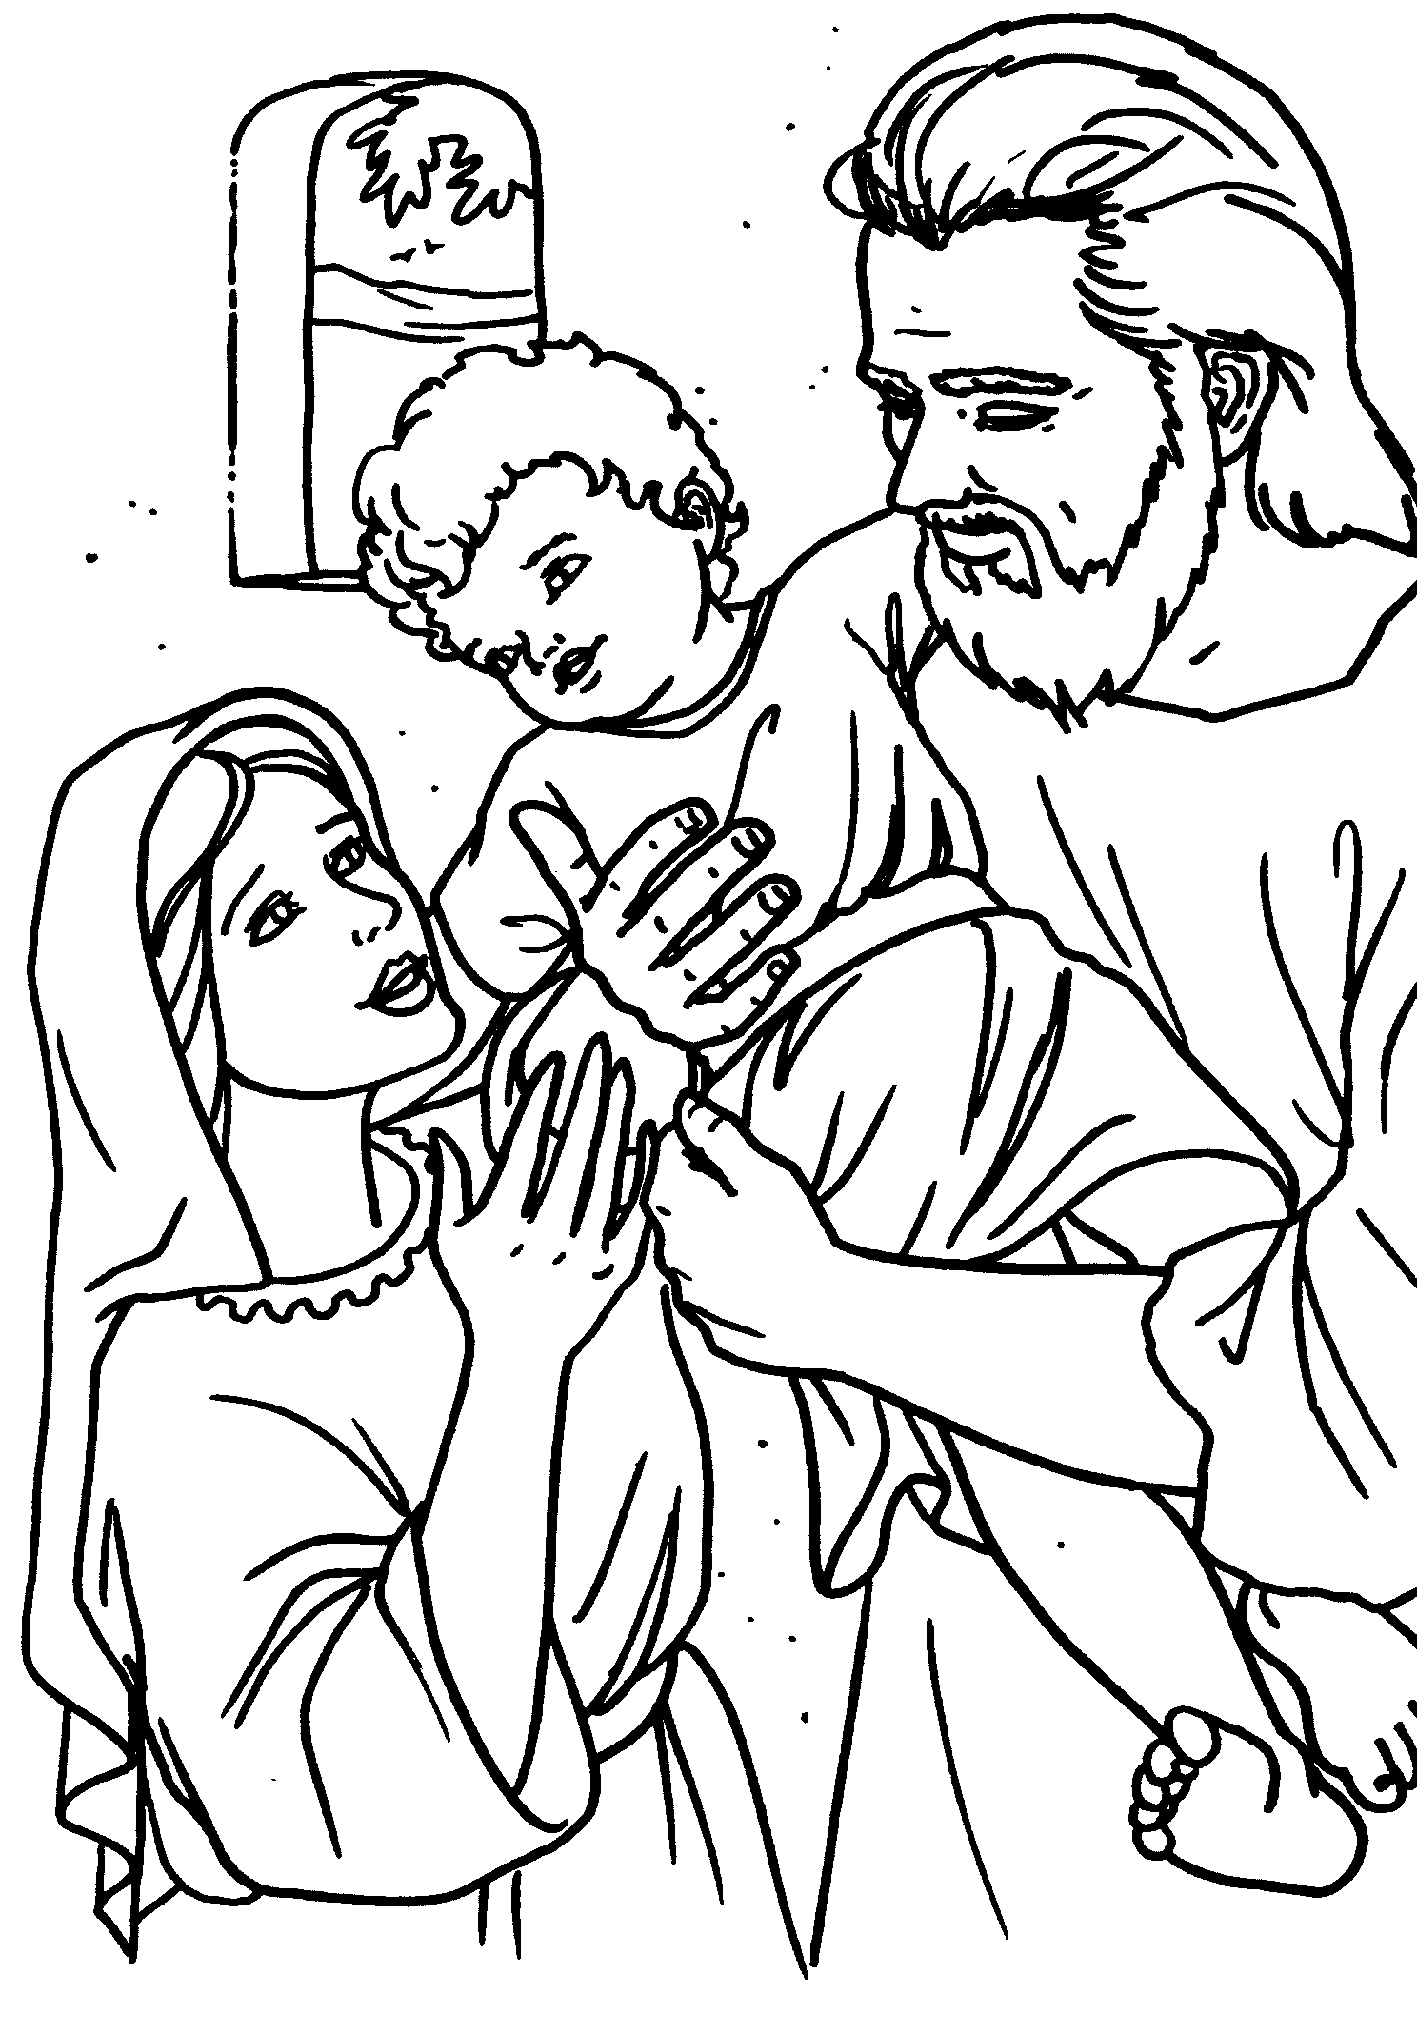 Dibujos para pintar sagrada familia - Imagui | La familia de ...